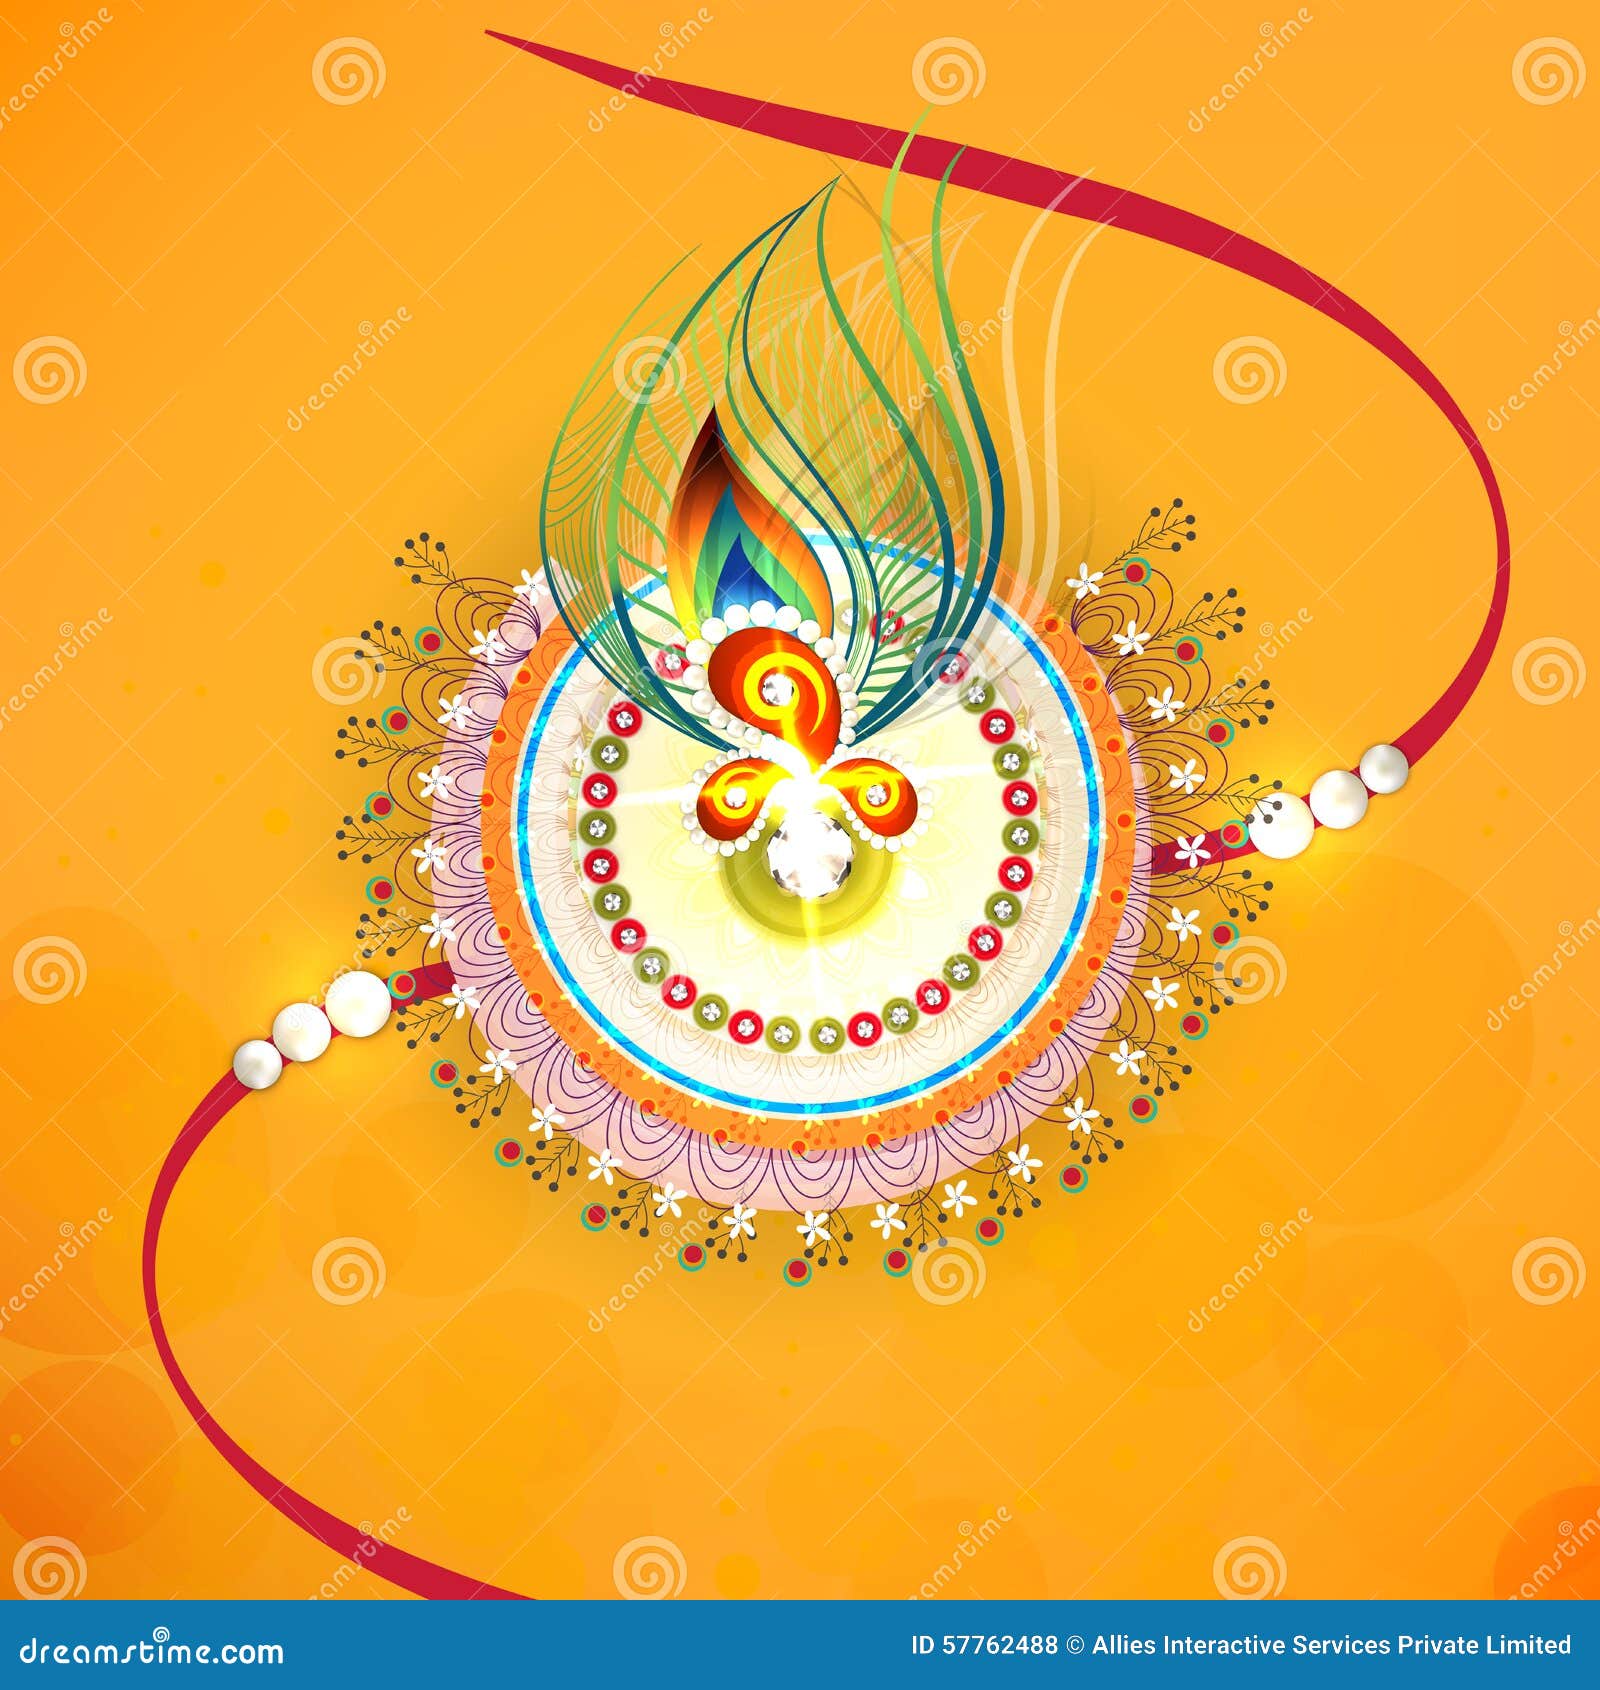 Beautiful Rakhi for Raksha Bandhan. Stock Illustration ...